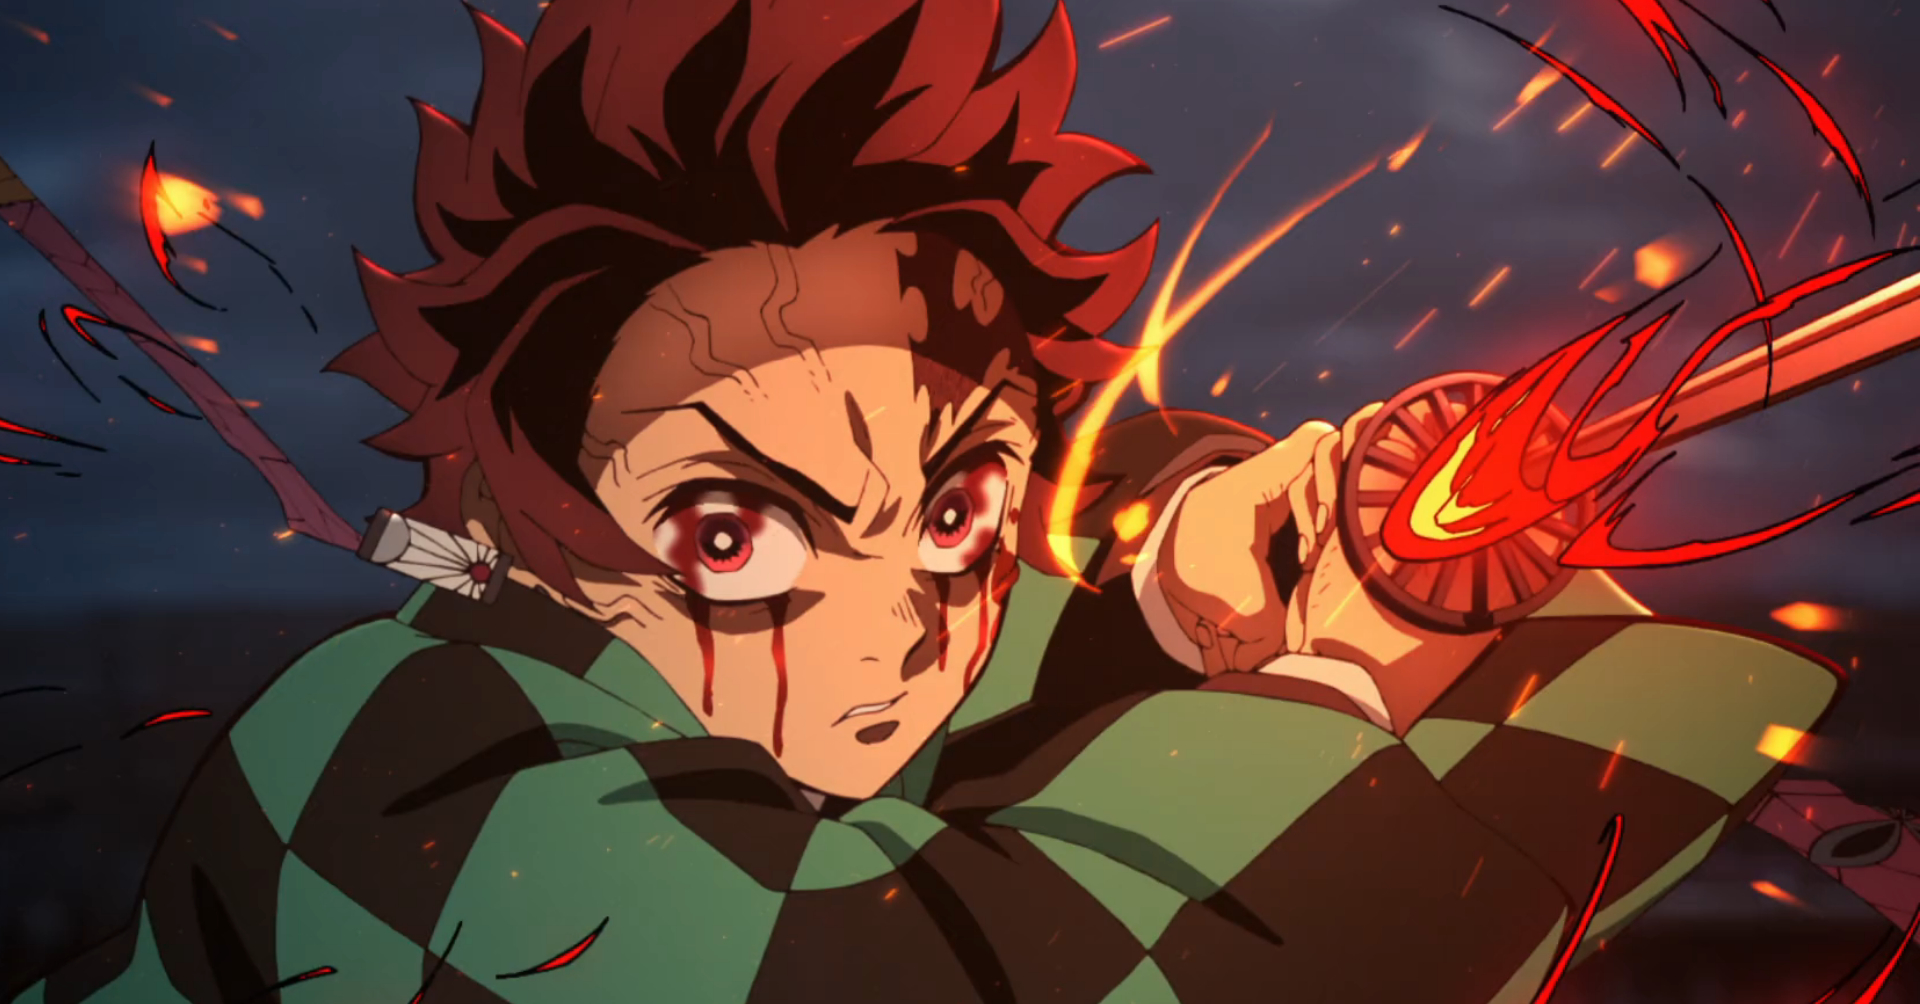 Announcing the Demon Slayer: Kimetsu no Yaiba <br>Anime Collab